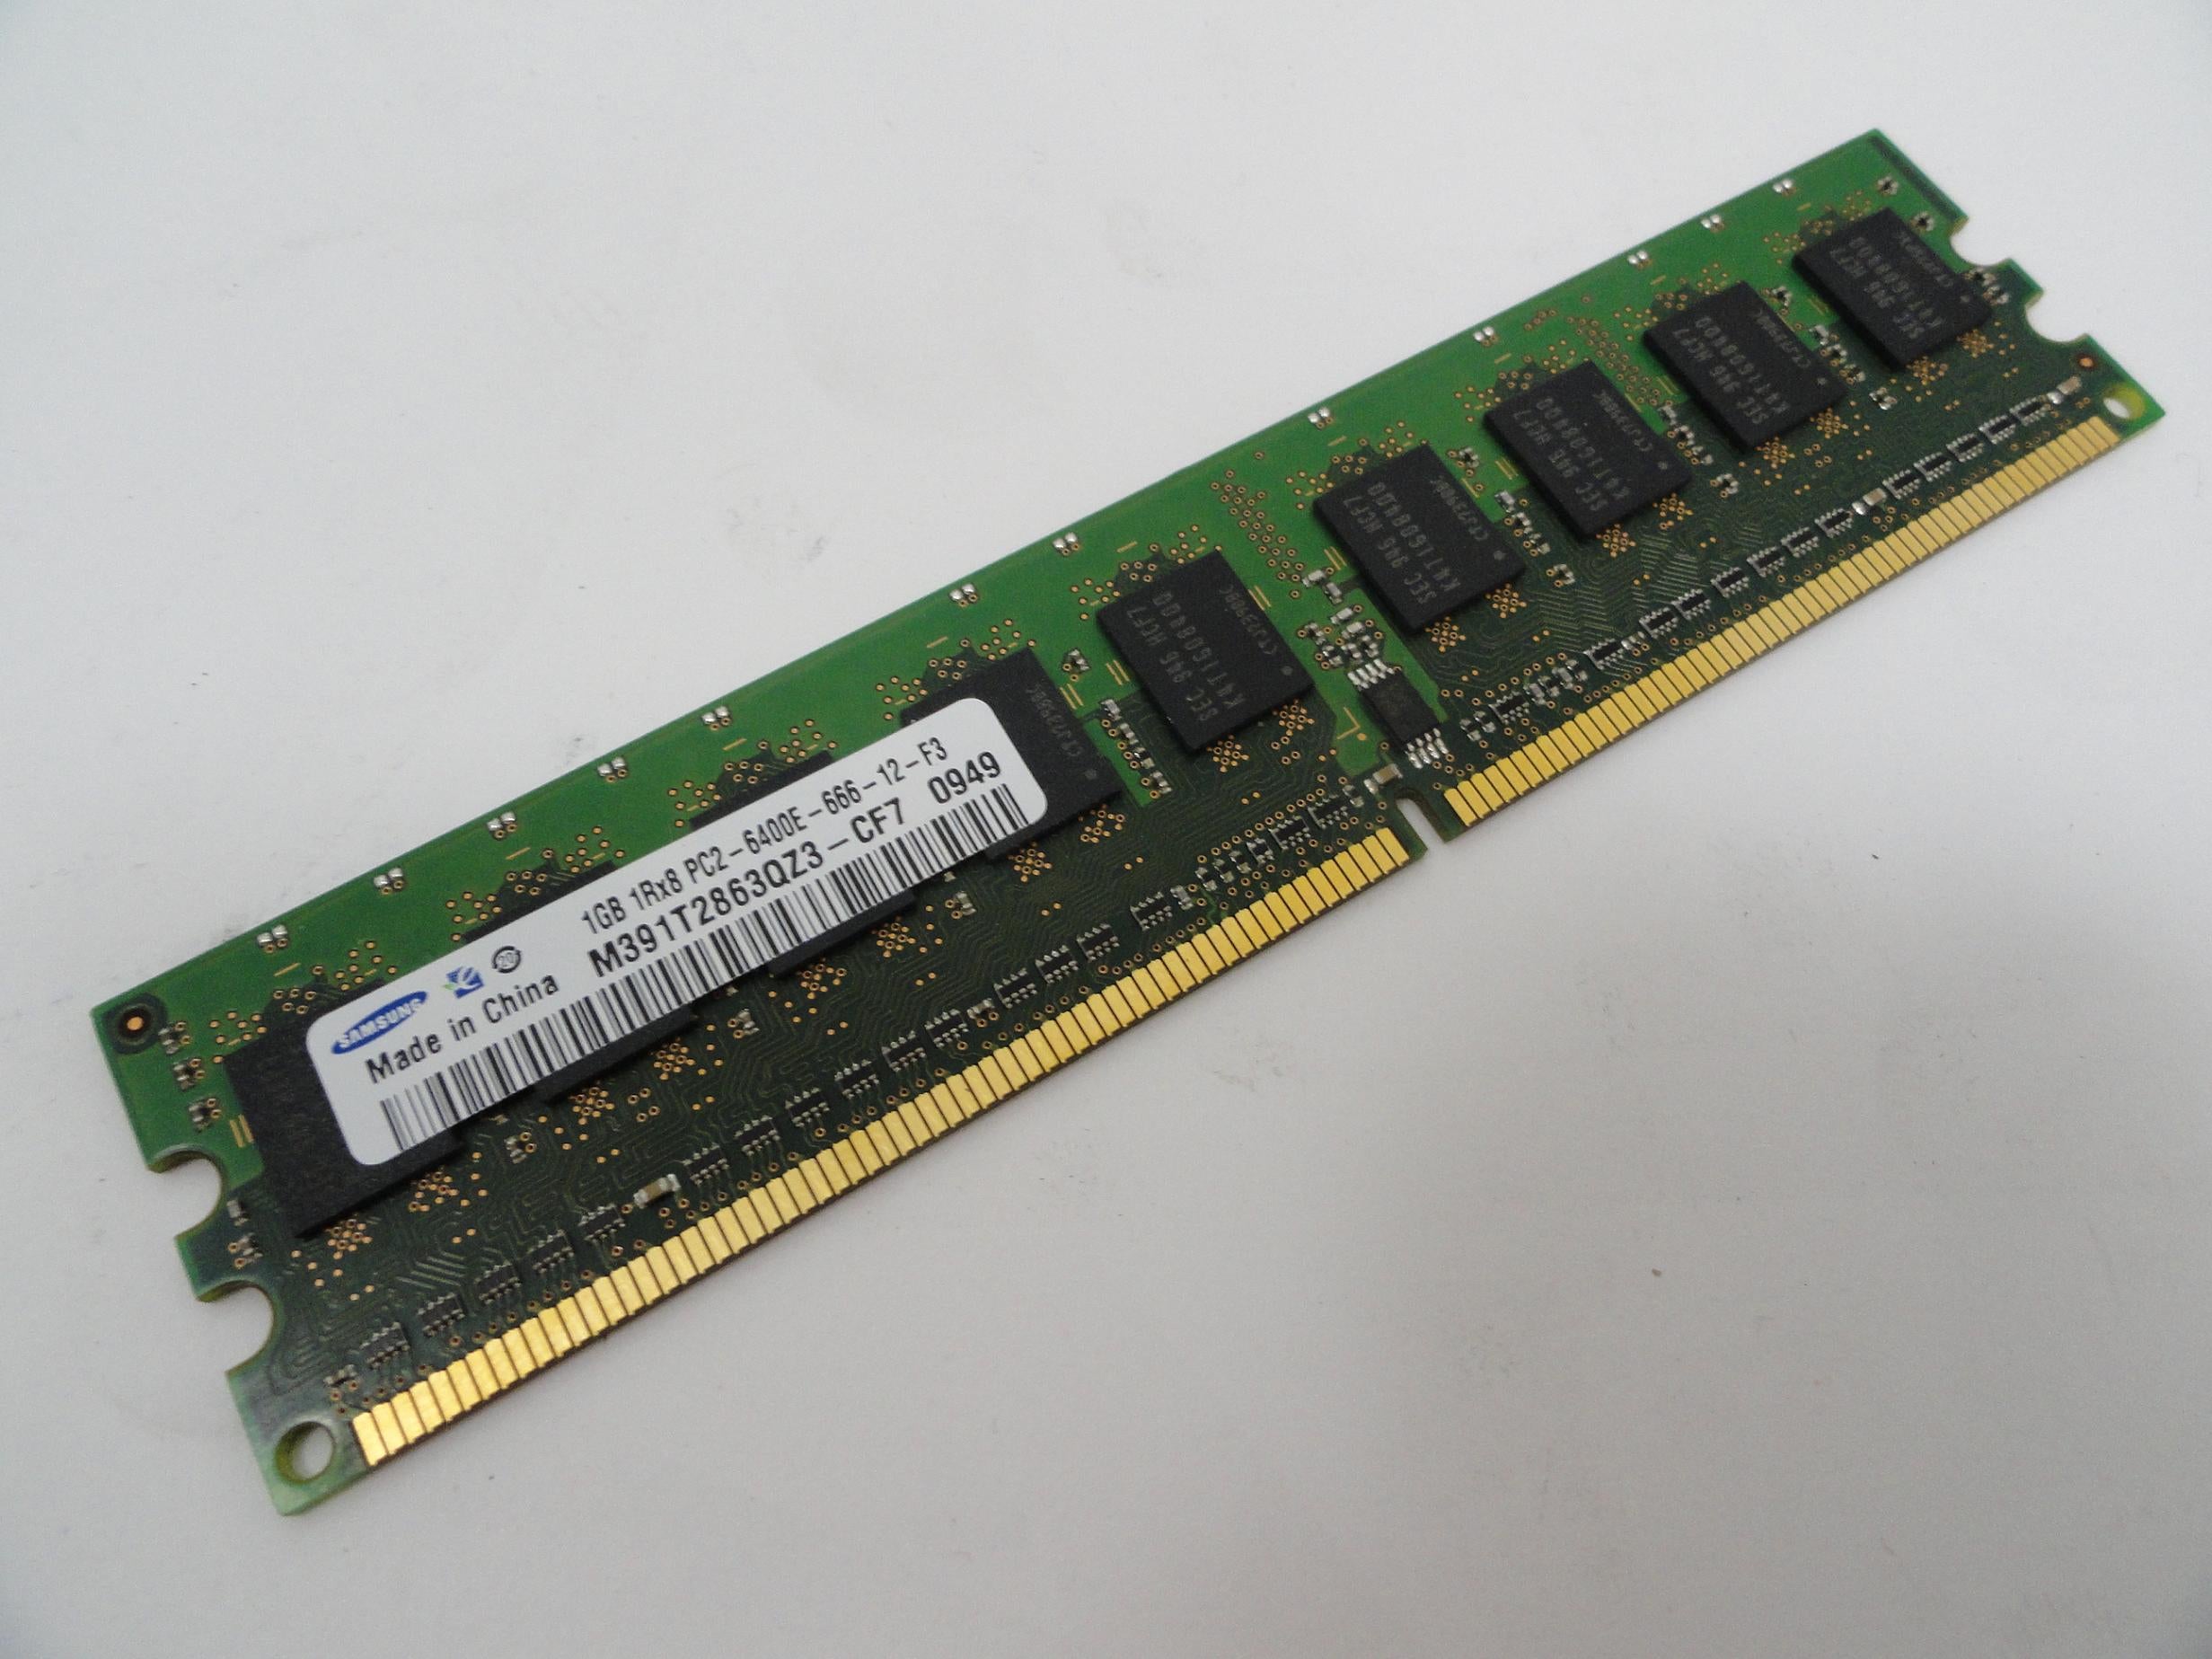 PR16349_M391T2863QZ3-CF7_HP 1GB DDR2-800MHz PC2-6400 ECC SDRAM DIMM Module - Image3